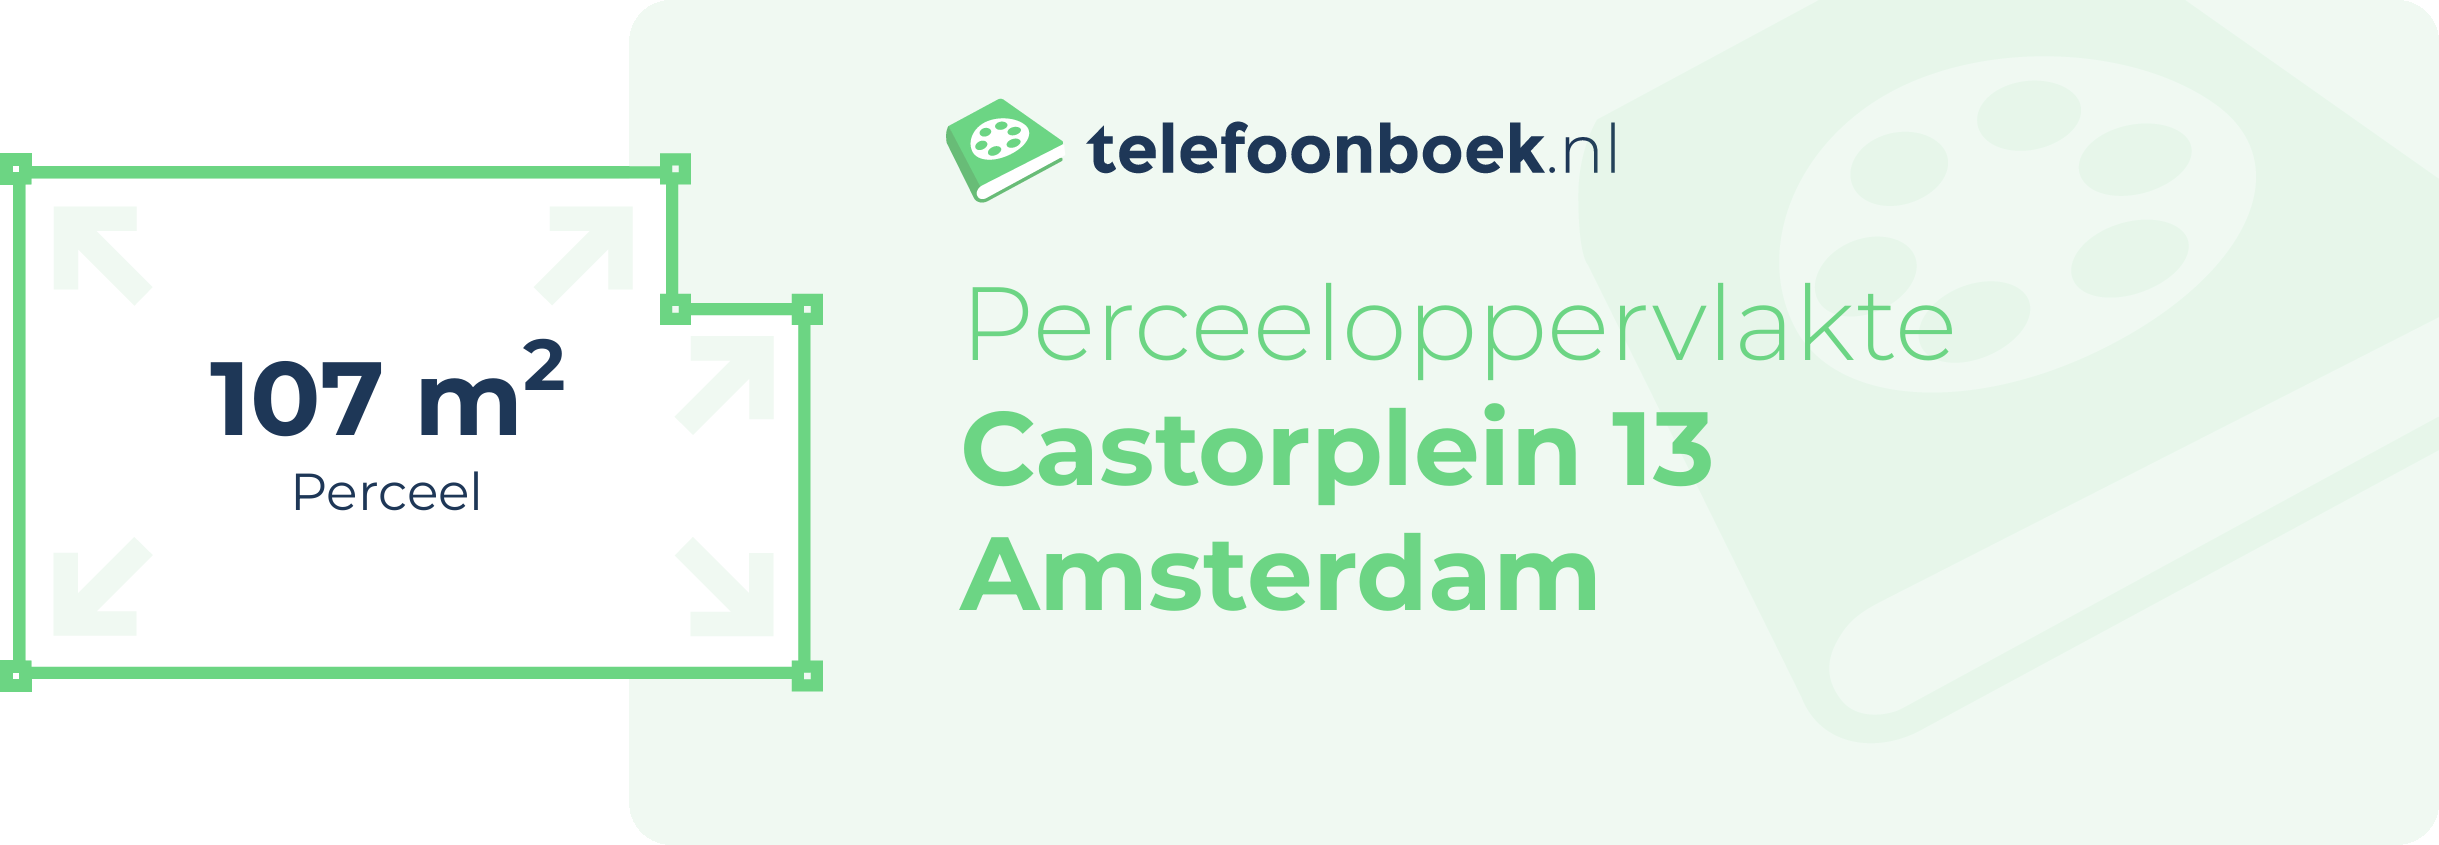 Perceeloppervlakte Castorplein 13 Amsterdam